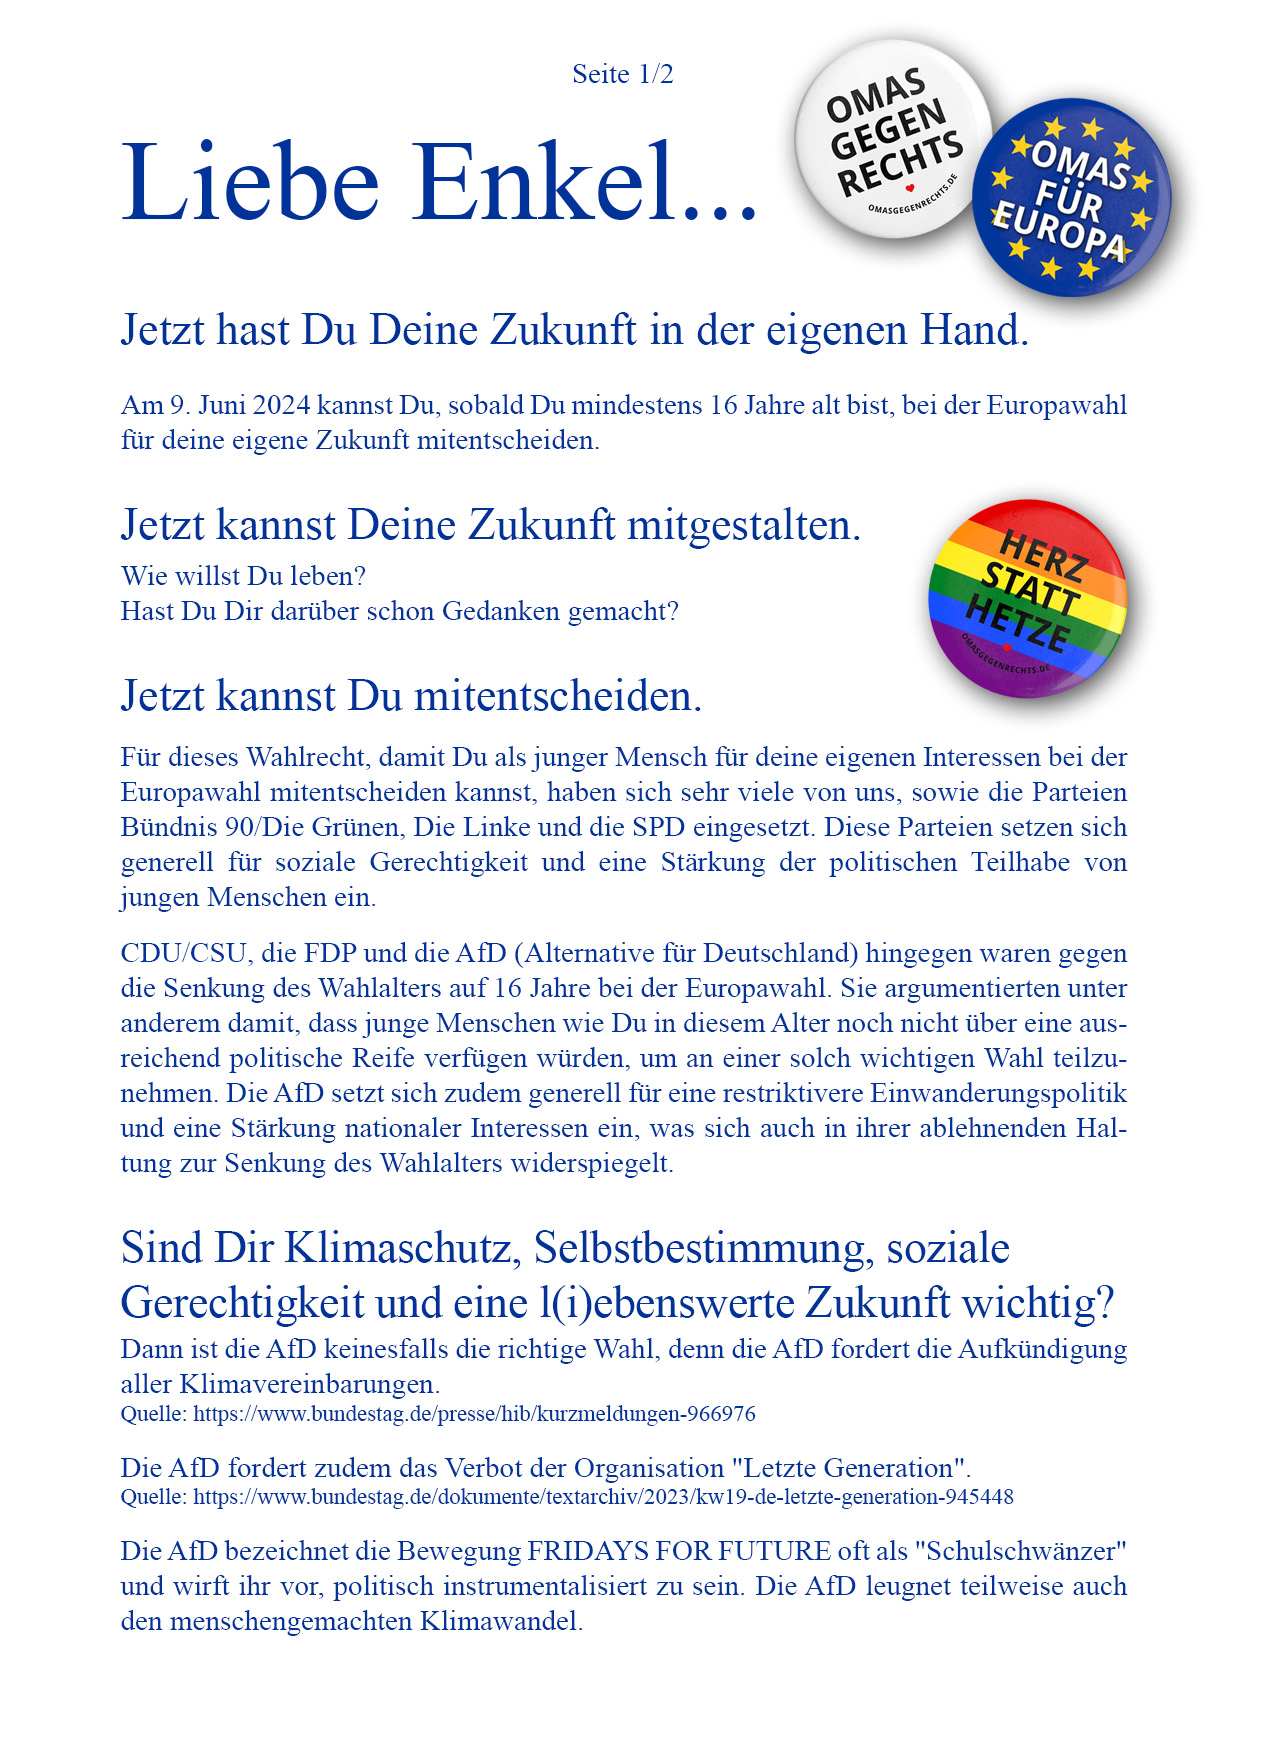 Enkelbrief zur Europawahl am 9.Juni 2024 - Seite 1 von 2 - omasgegenrechts.de - #omasgegenrechts.aktiv